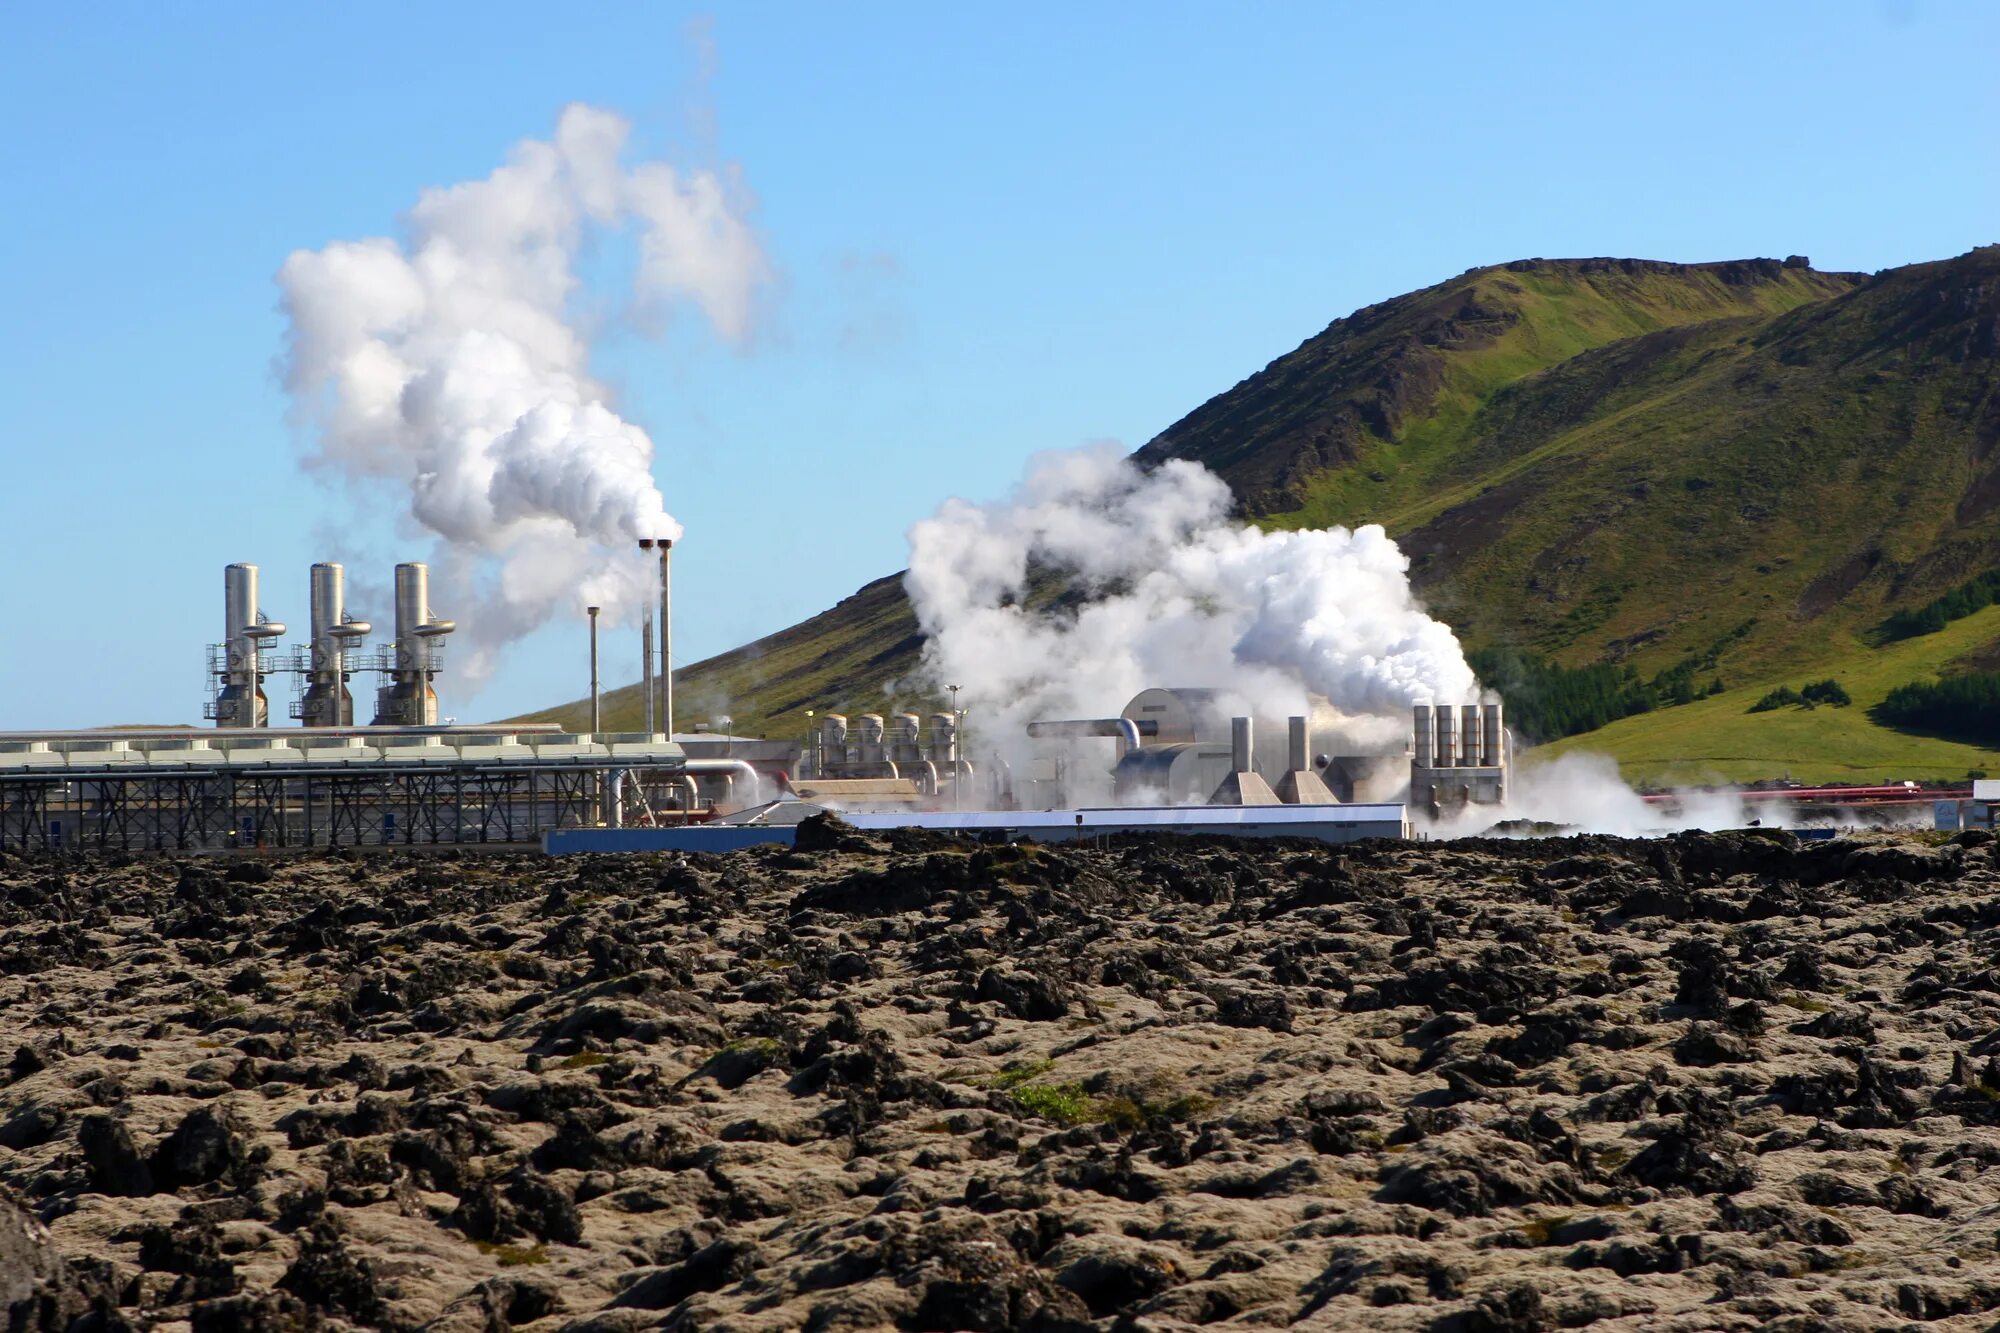 Геотермальная энергия в Исландии. Геотермальная станция в Исландии. Utyjnthvfkmyfz 'ktrnhjcnfywbz d bckfyl;BB. Несьявеллир ГЕОТЭС, Исландия.